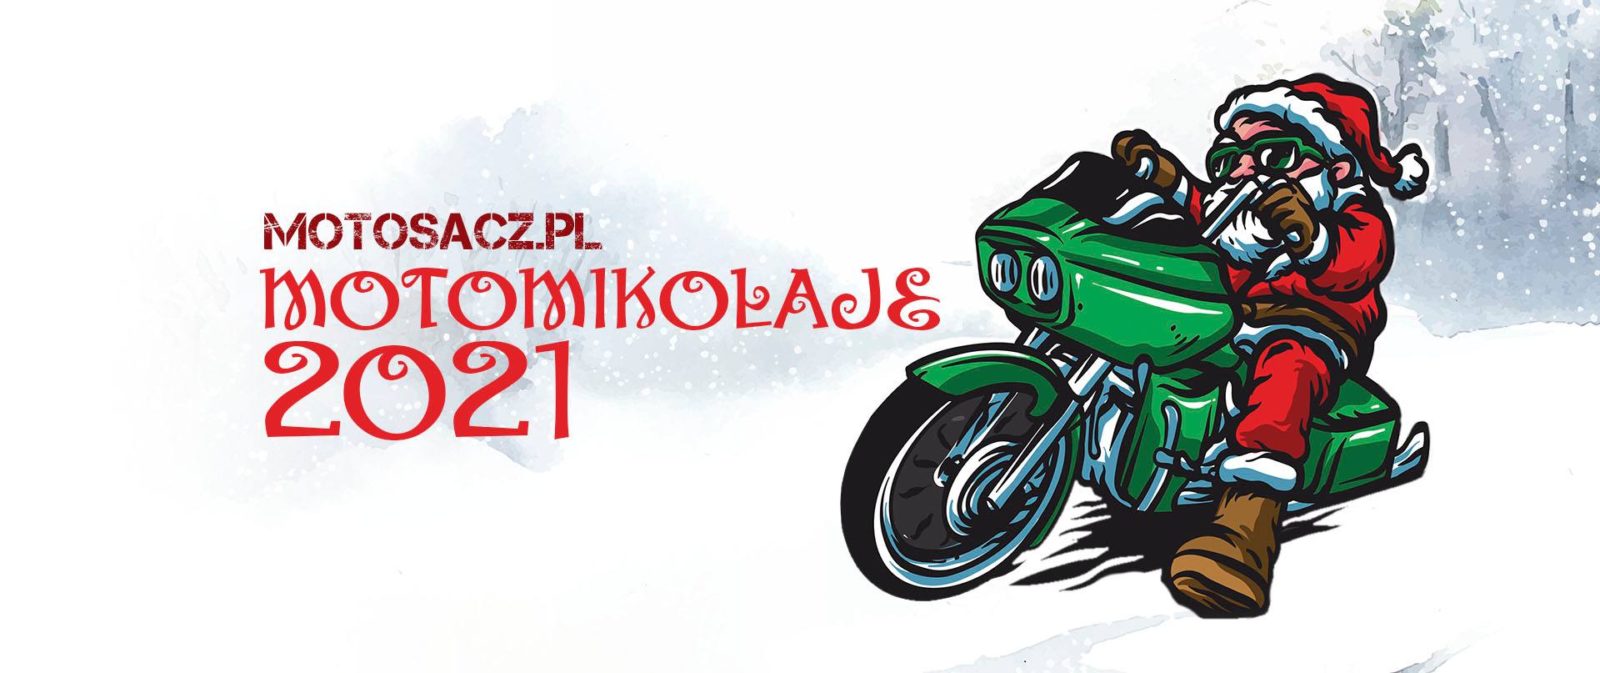 Wydawnictwo LupanWydawnictwo Lupan wspiera akcję MOTOMIKOŁAJE 2021 - Mikołaje na motocyklach - Nowy Sącz i okolice